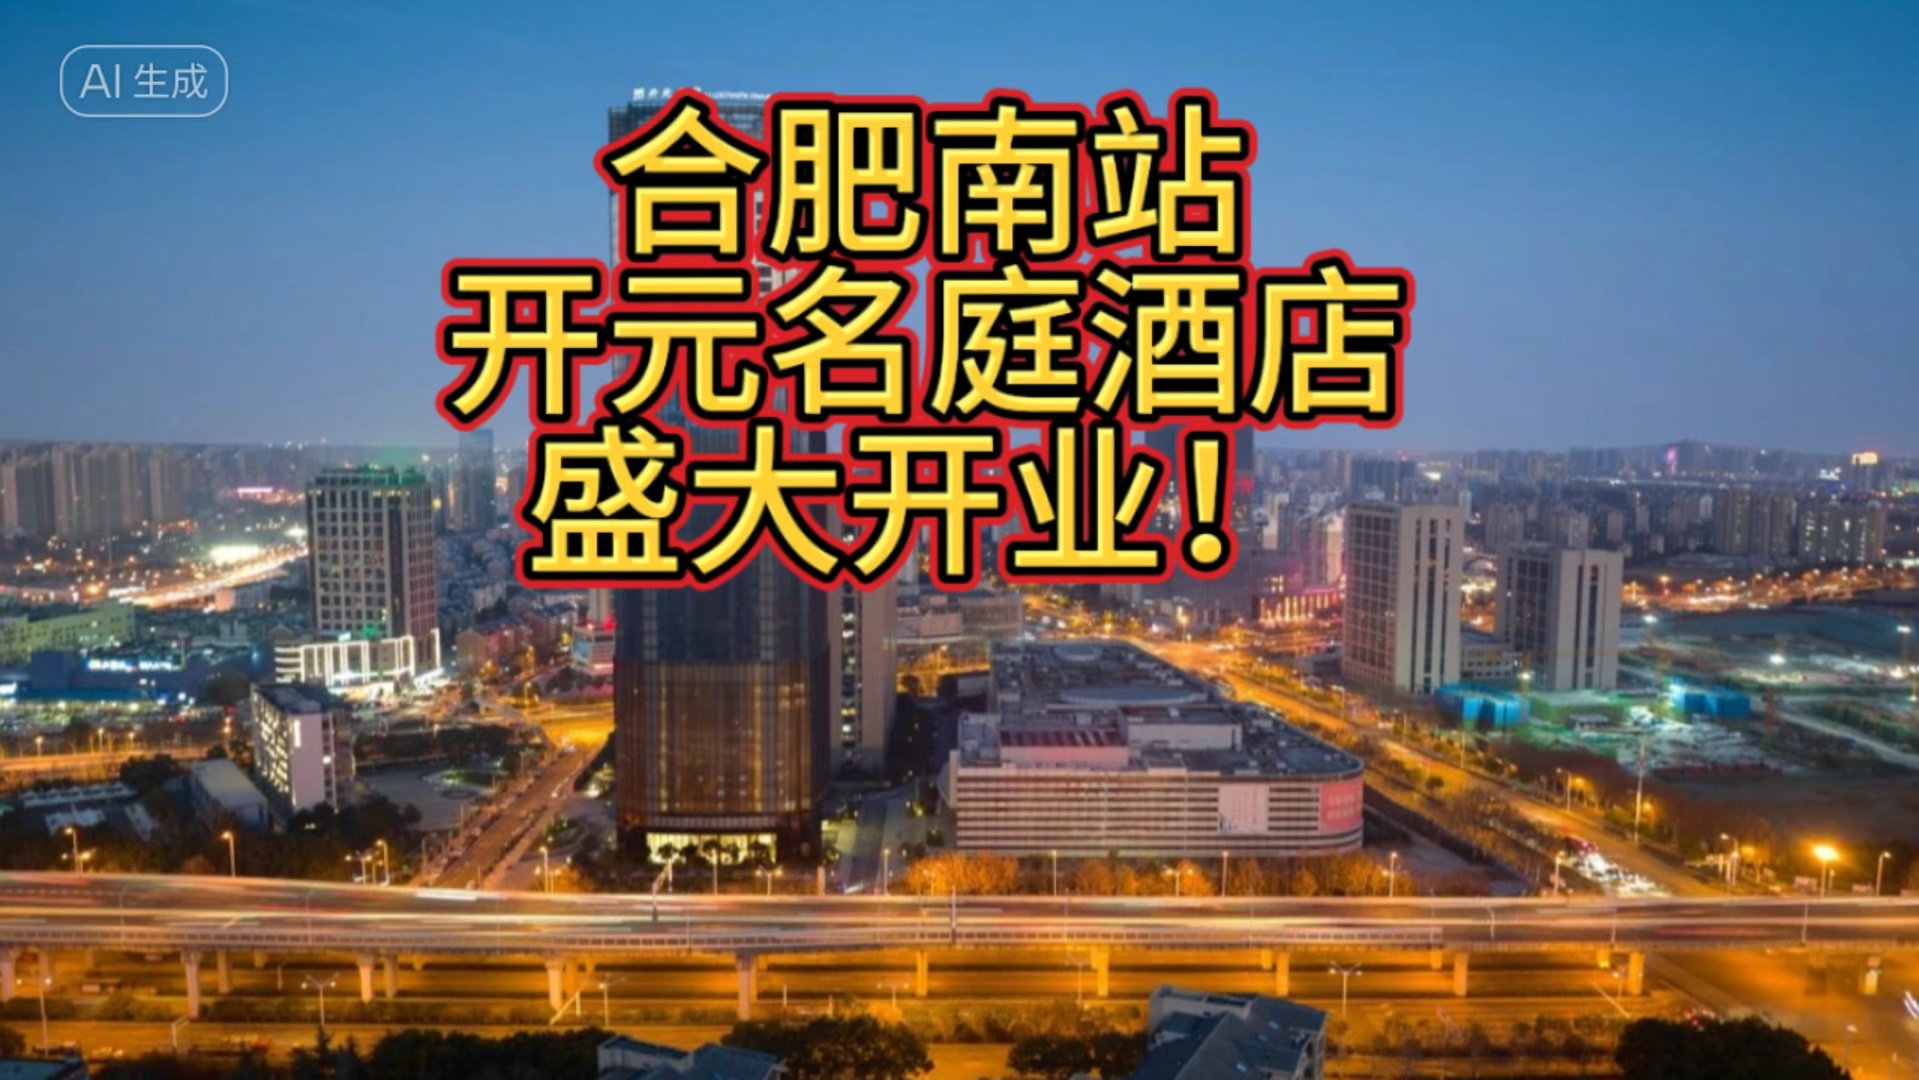 合肥南站开元名庭酒店盛大开业!